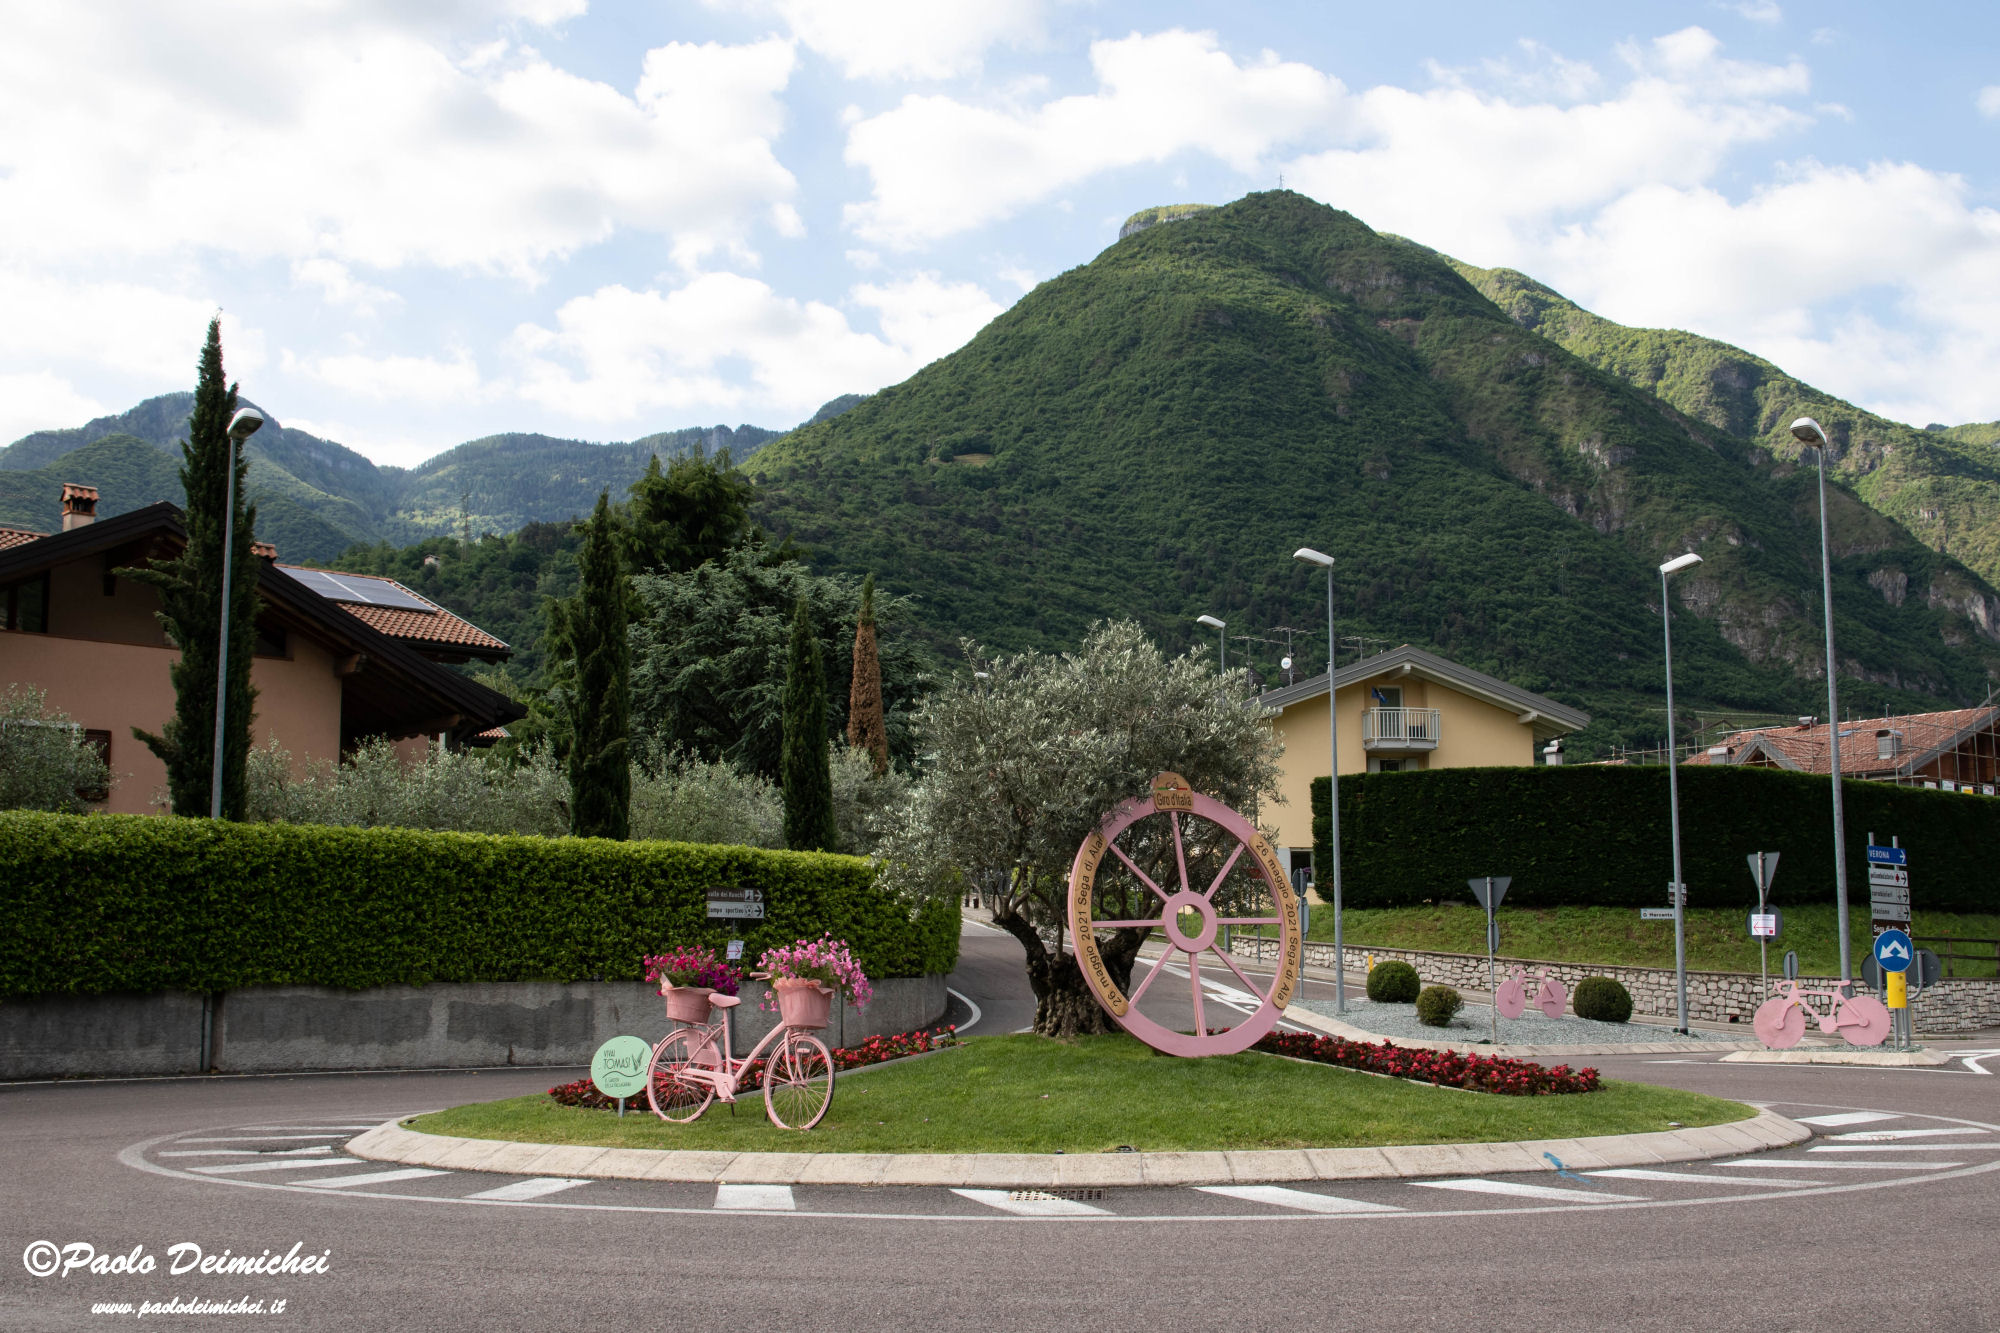 Roundabout for the Giuro D'Italia in Ala di Trento...